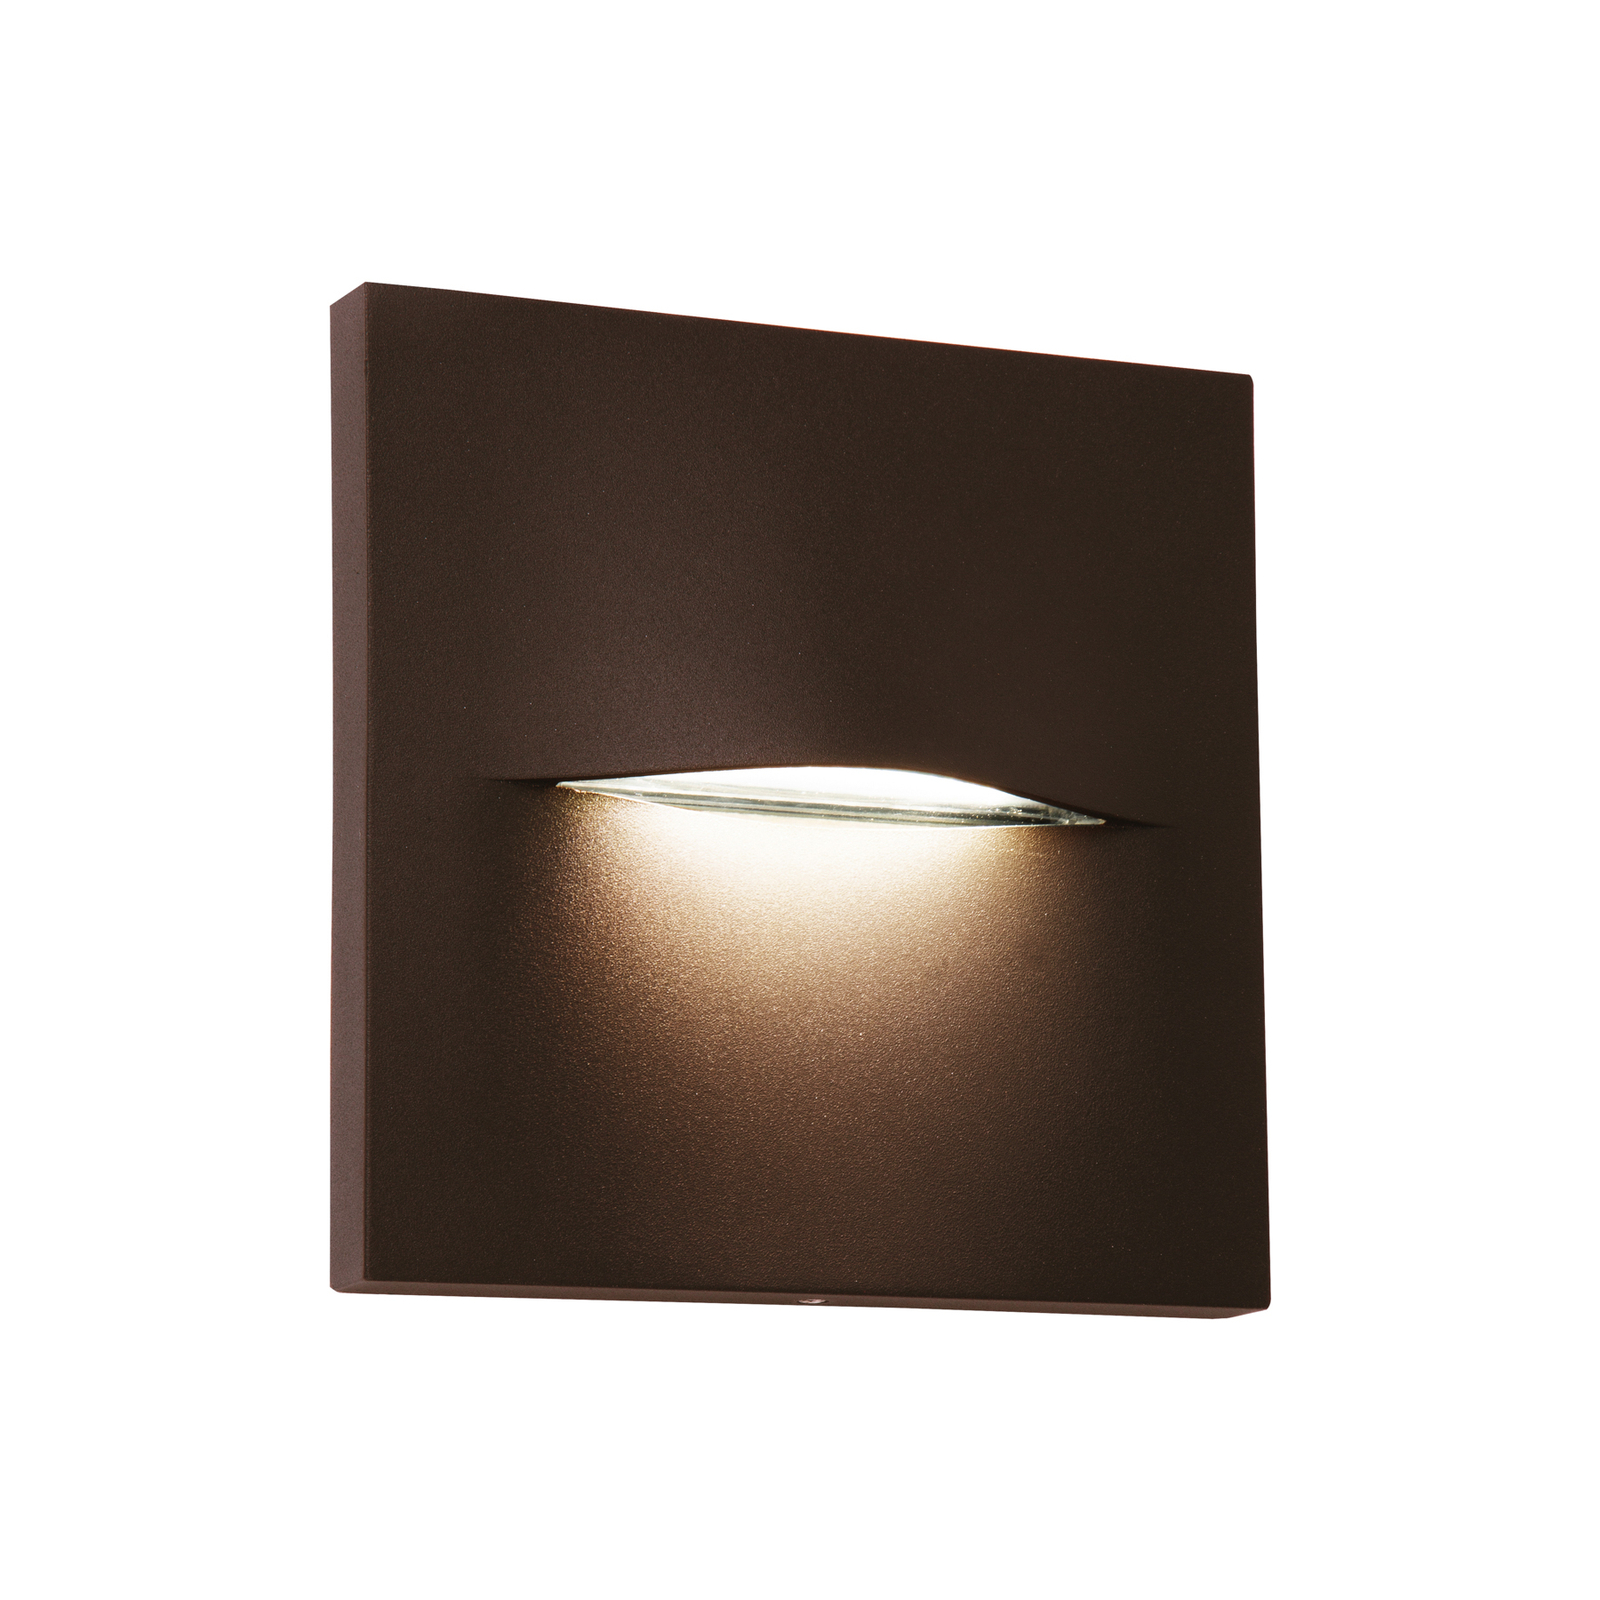 Vonkajšie nástenné svietidlo LED Vita, hrdzavohnedá farba, 14 x 14 cm